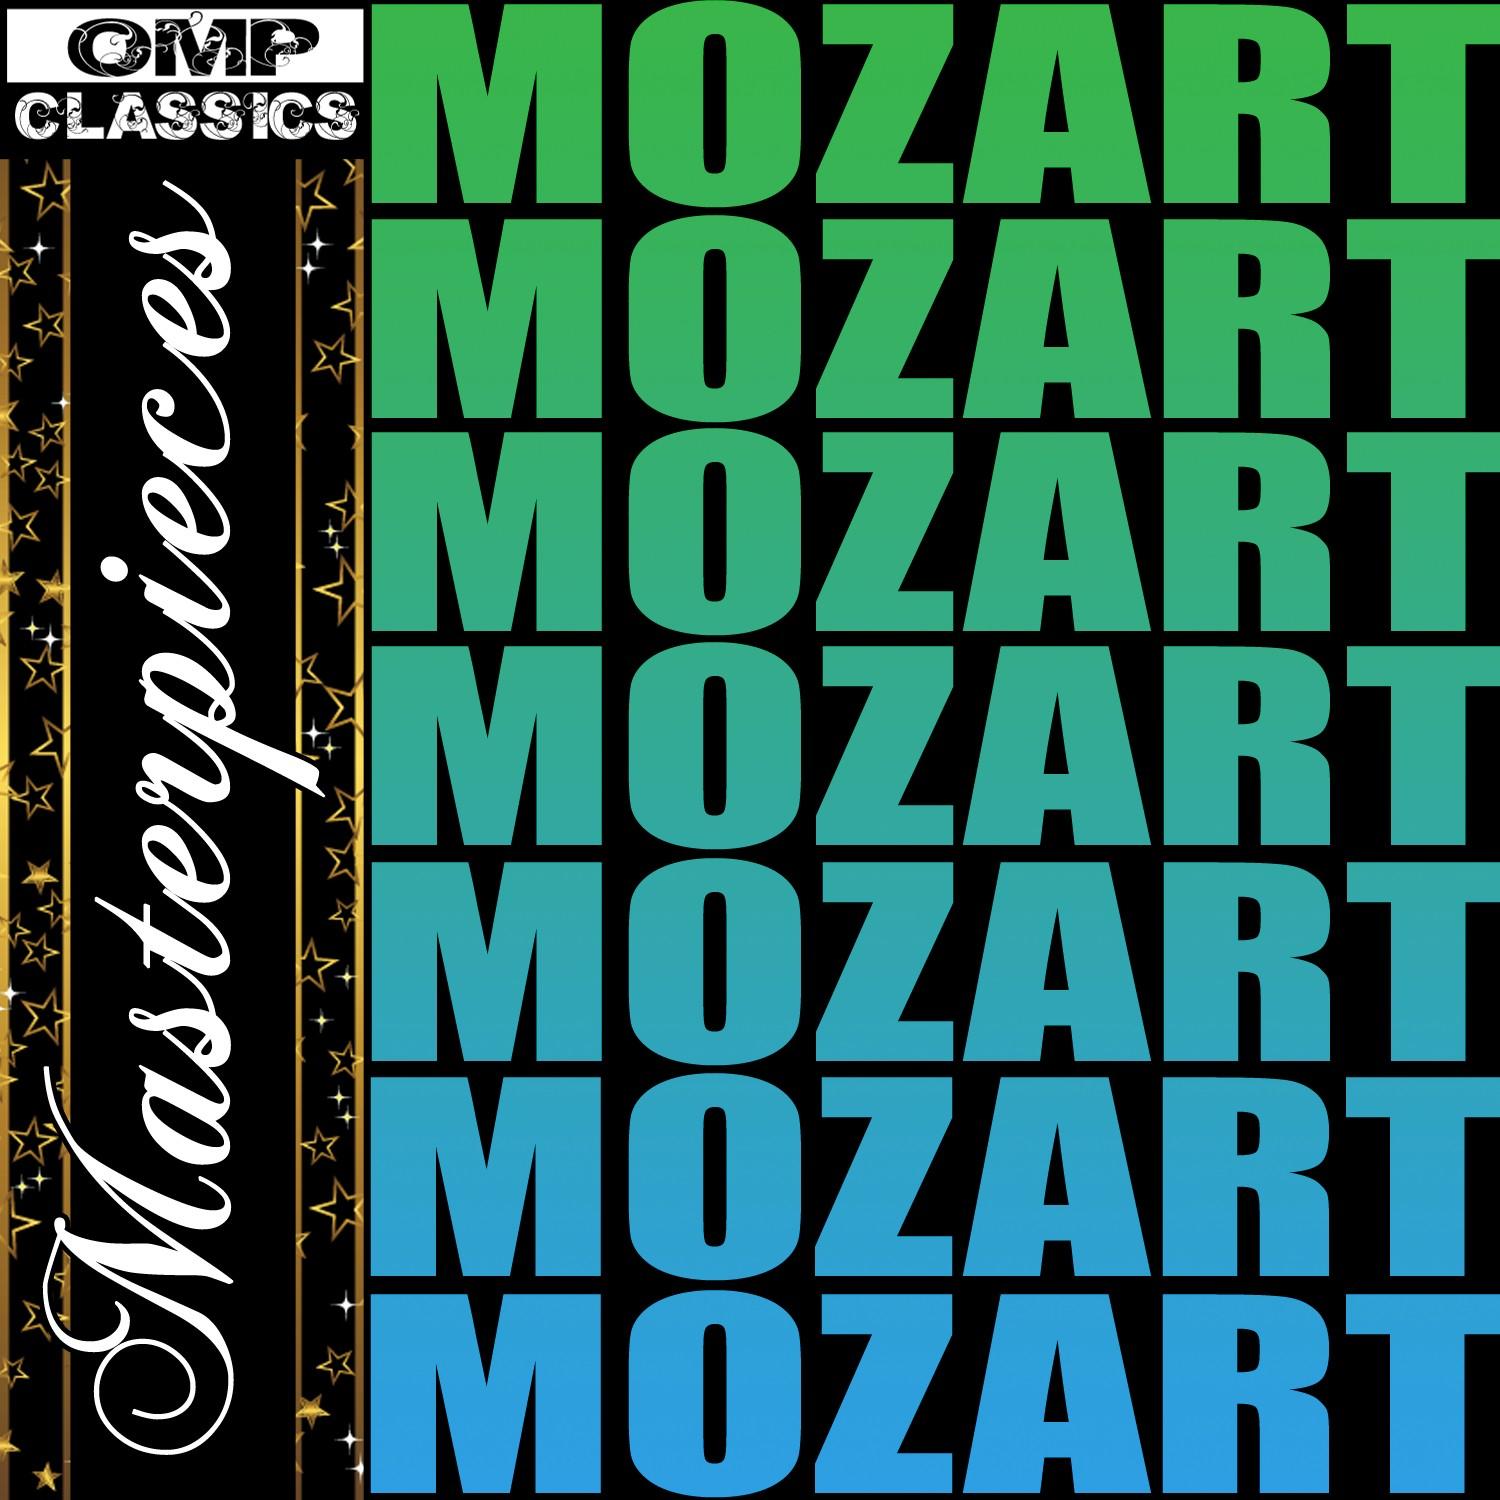 Masterpieces: Mozart